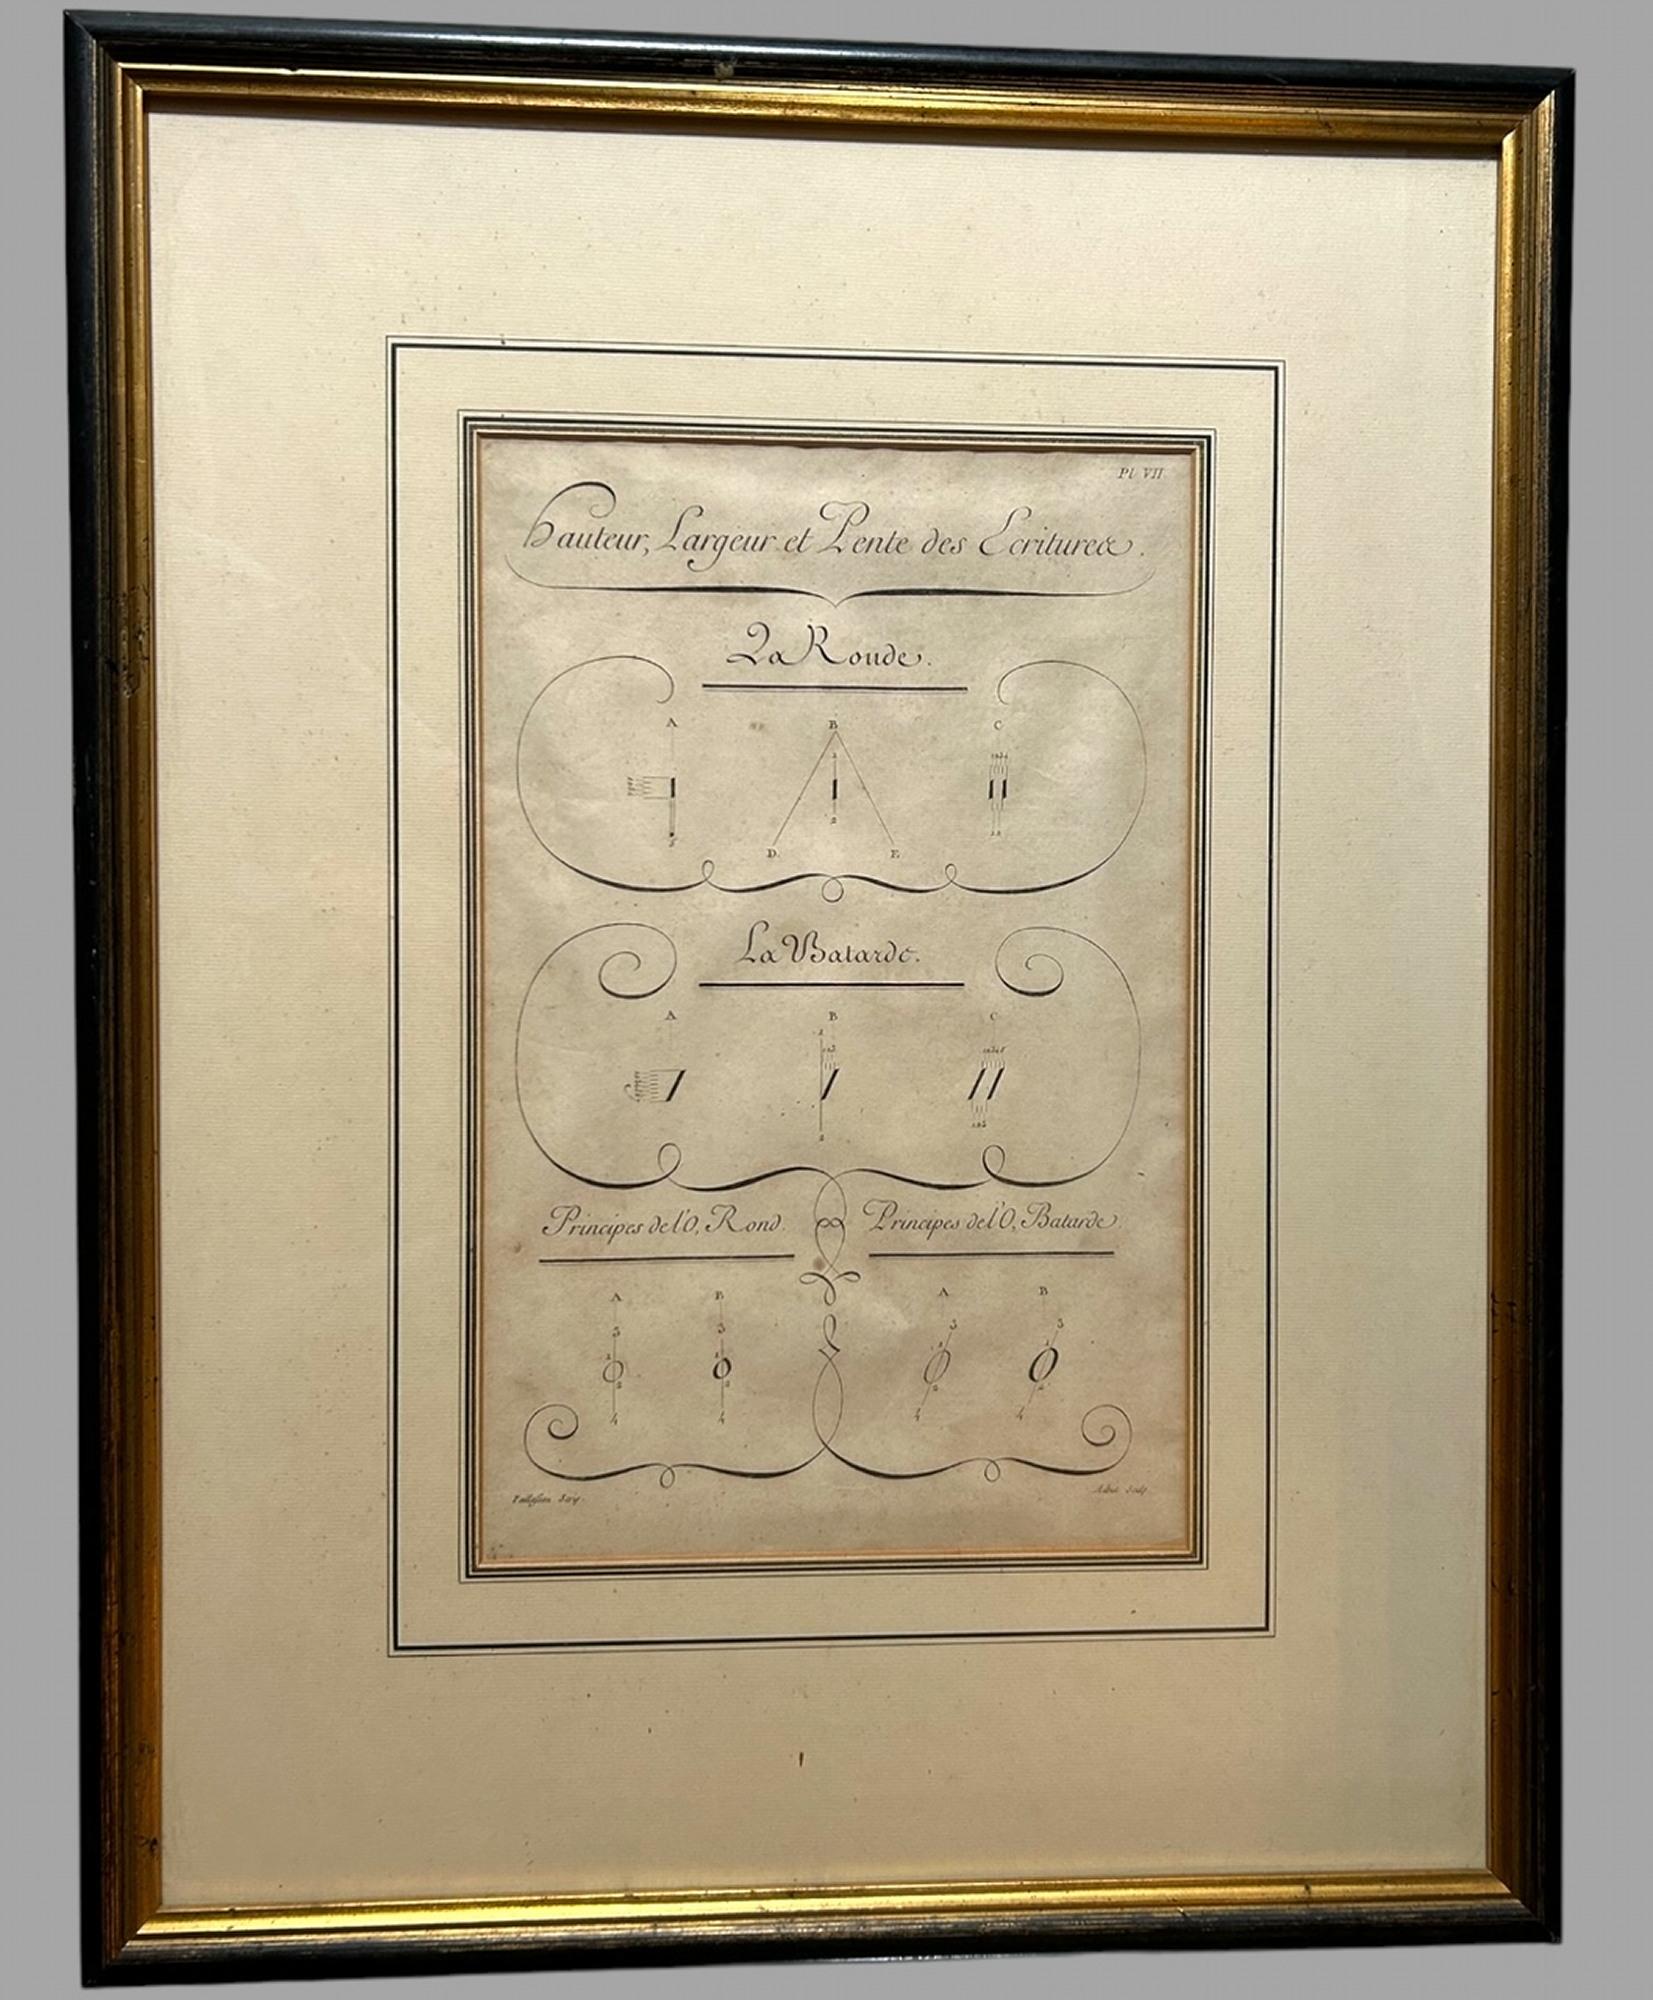 Merveilleux ensemble de huit planches de L'Art d'Ecrire de Charles Paillasson, toutes encadrées individuellement vers 1763 avec le graveur français Aubin.

Le célèbre manuel d'écriture de Charles Paillasson, L'Art d'écrire, a été publié en 1763 dans